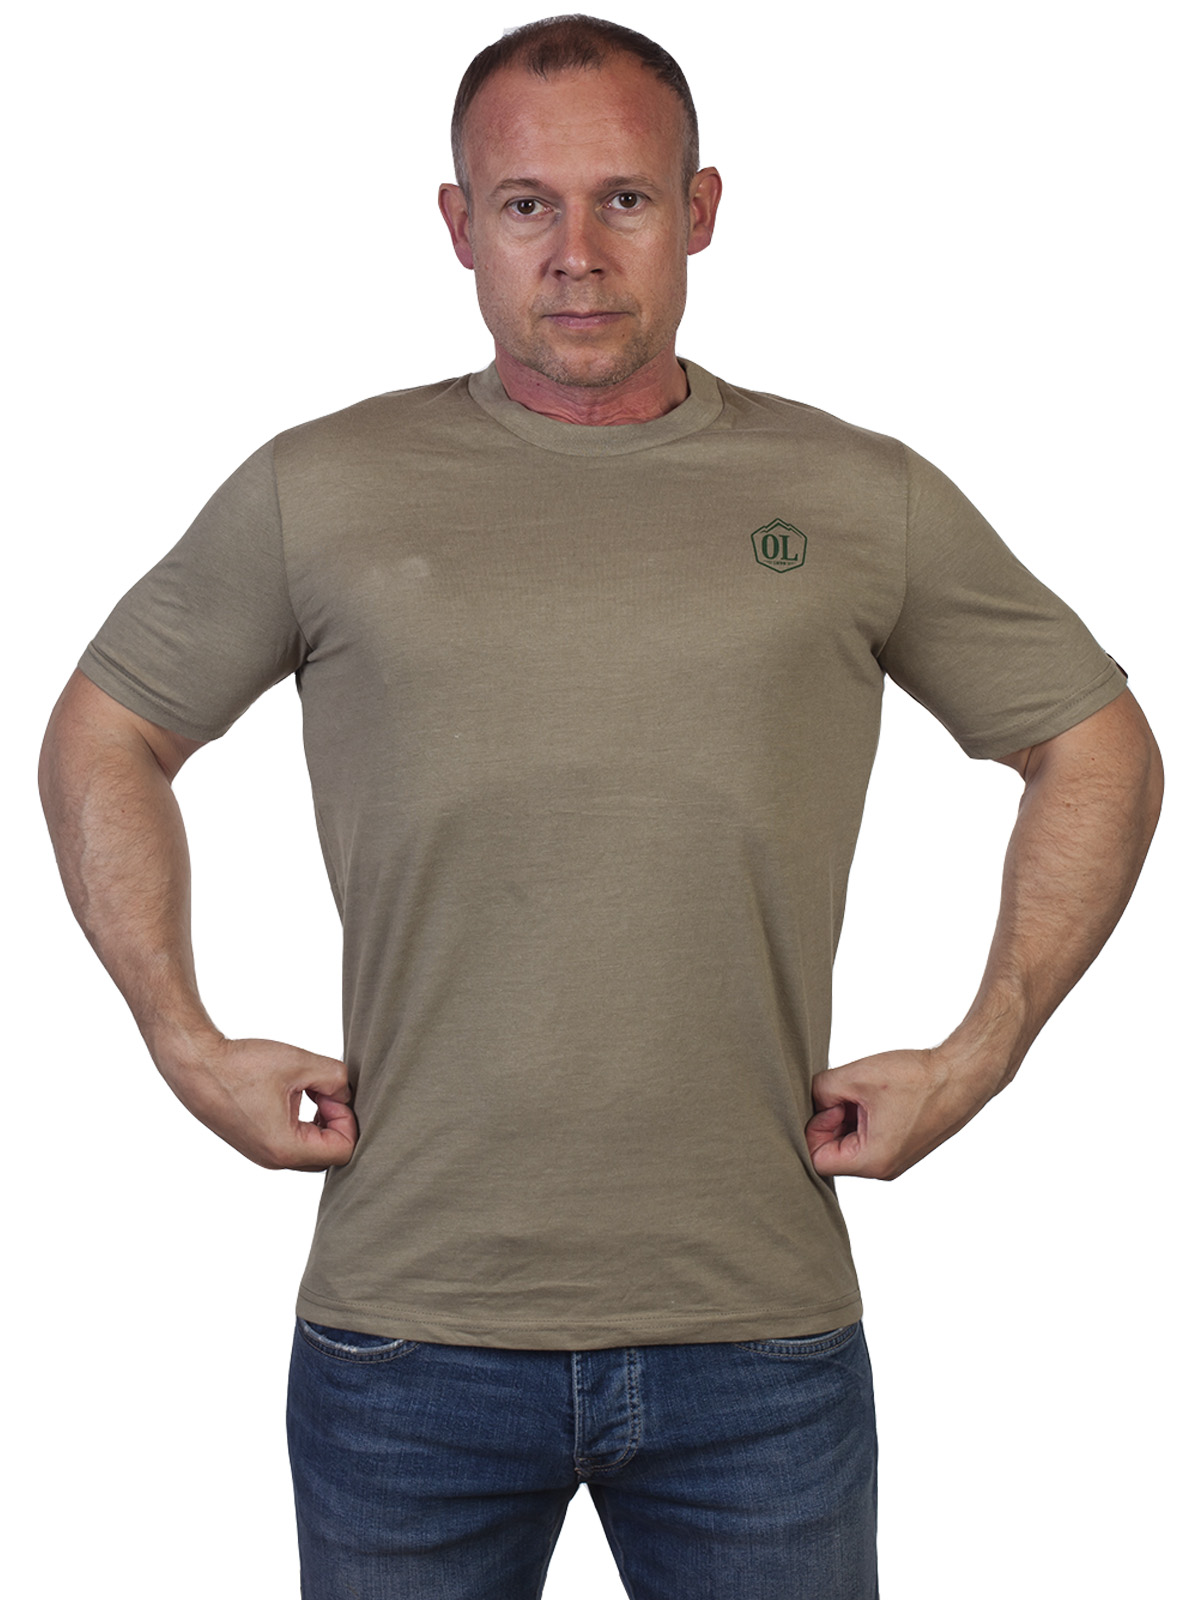 Купить в интернет магазине недорогую милитари футболку Outdoor life